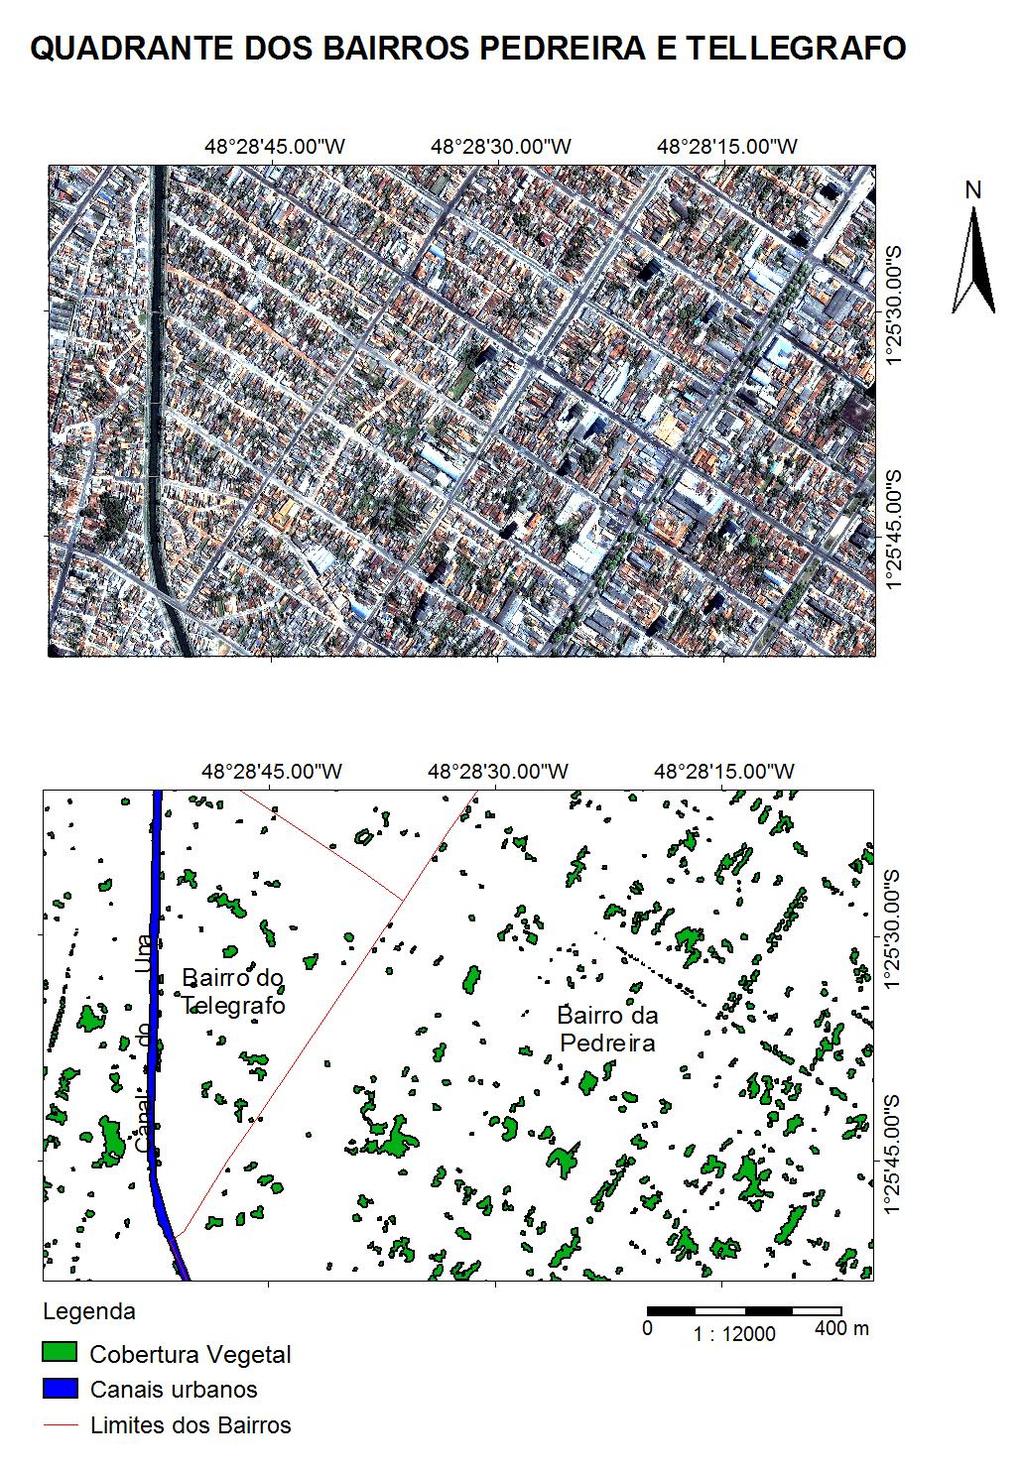 Observações geográficas nos bairros da Pedreira e Telégrafo localizados no DASAC. Na Pedreira observamos um padrão de arruamentos regulares com ruas e avenidas arborizadas e quintais urbanos.